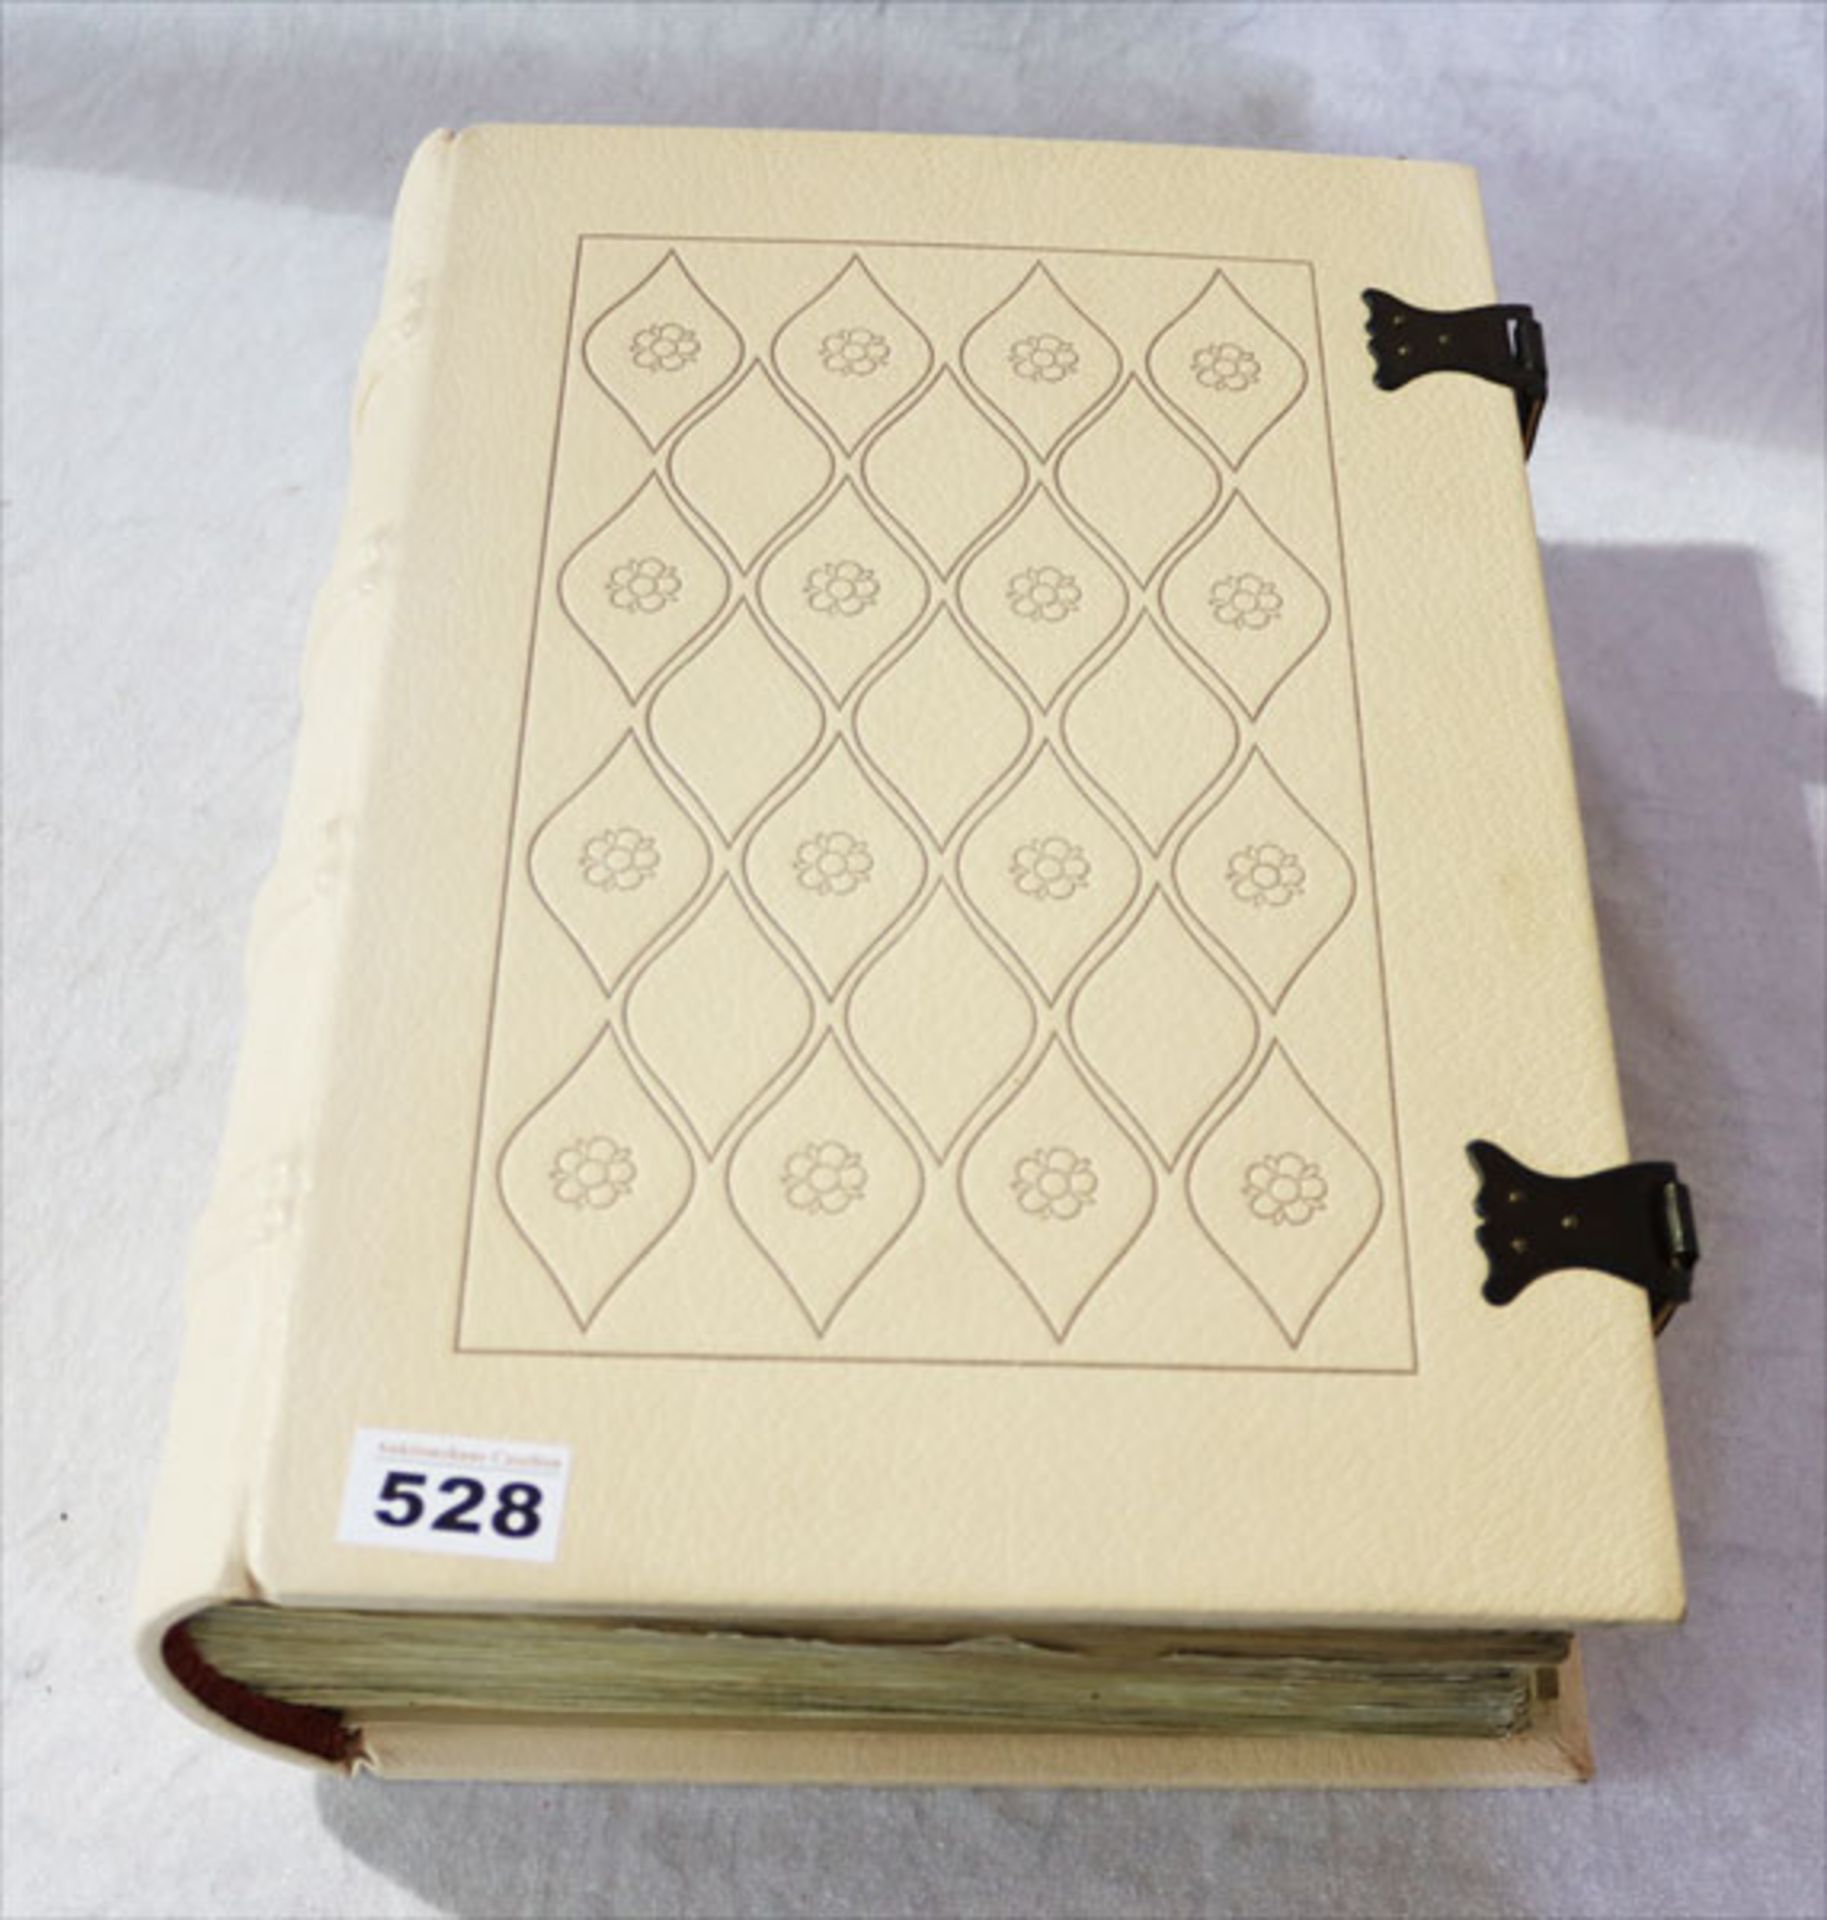 Buch 'Codex Manesse', Vollfaksimile der Großen Heidelberger Liederhandschrift, 1974, leicht